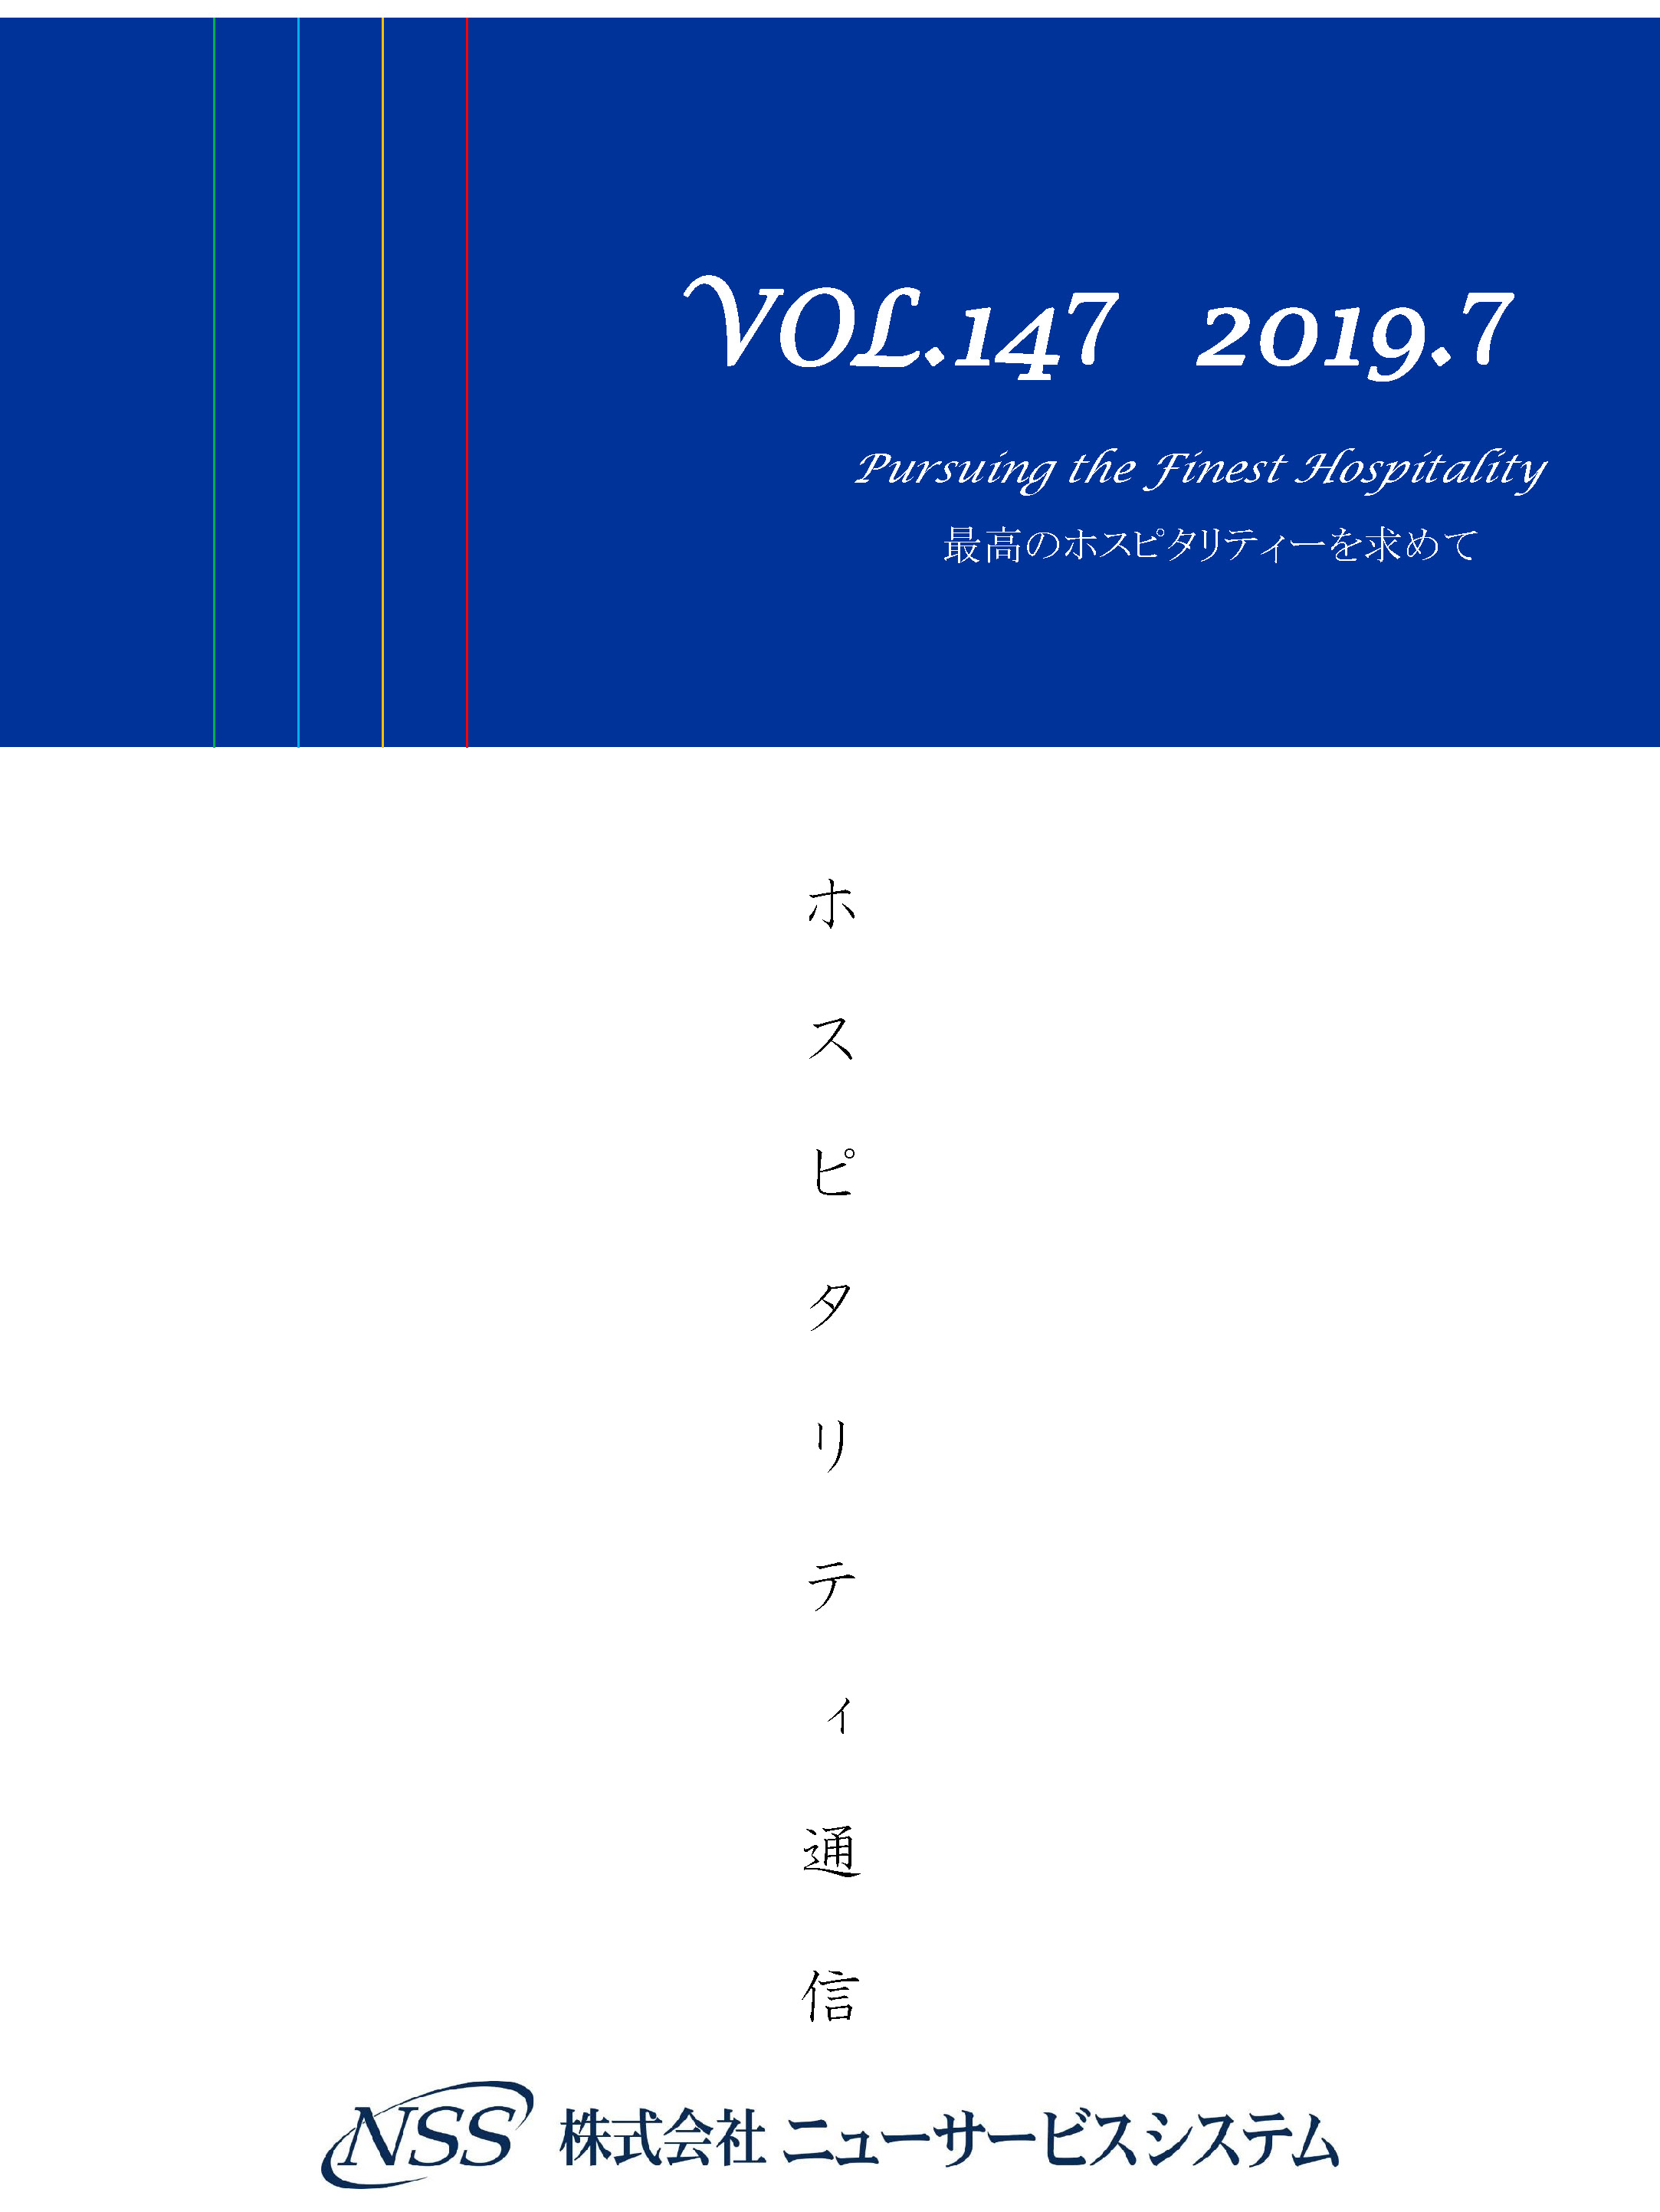 ホスピタリティ通信 vol.147